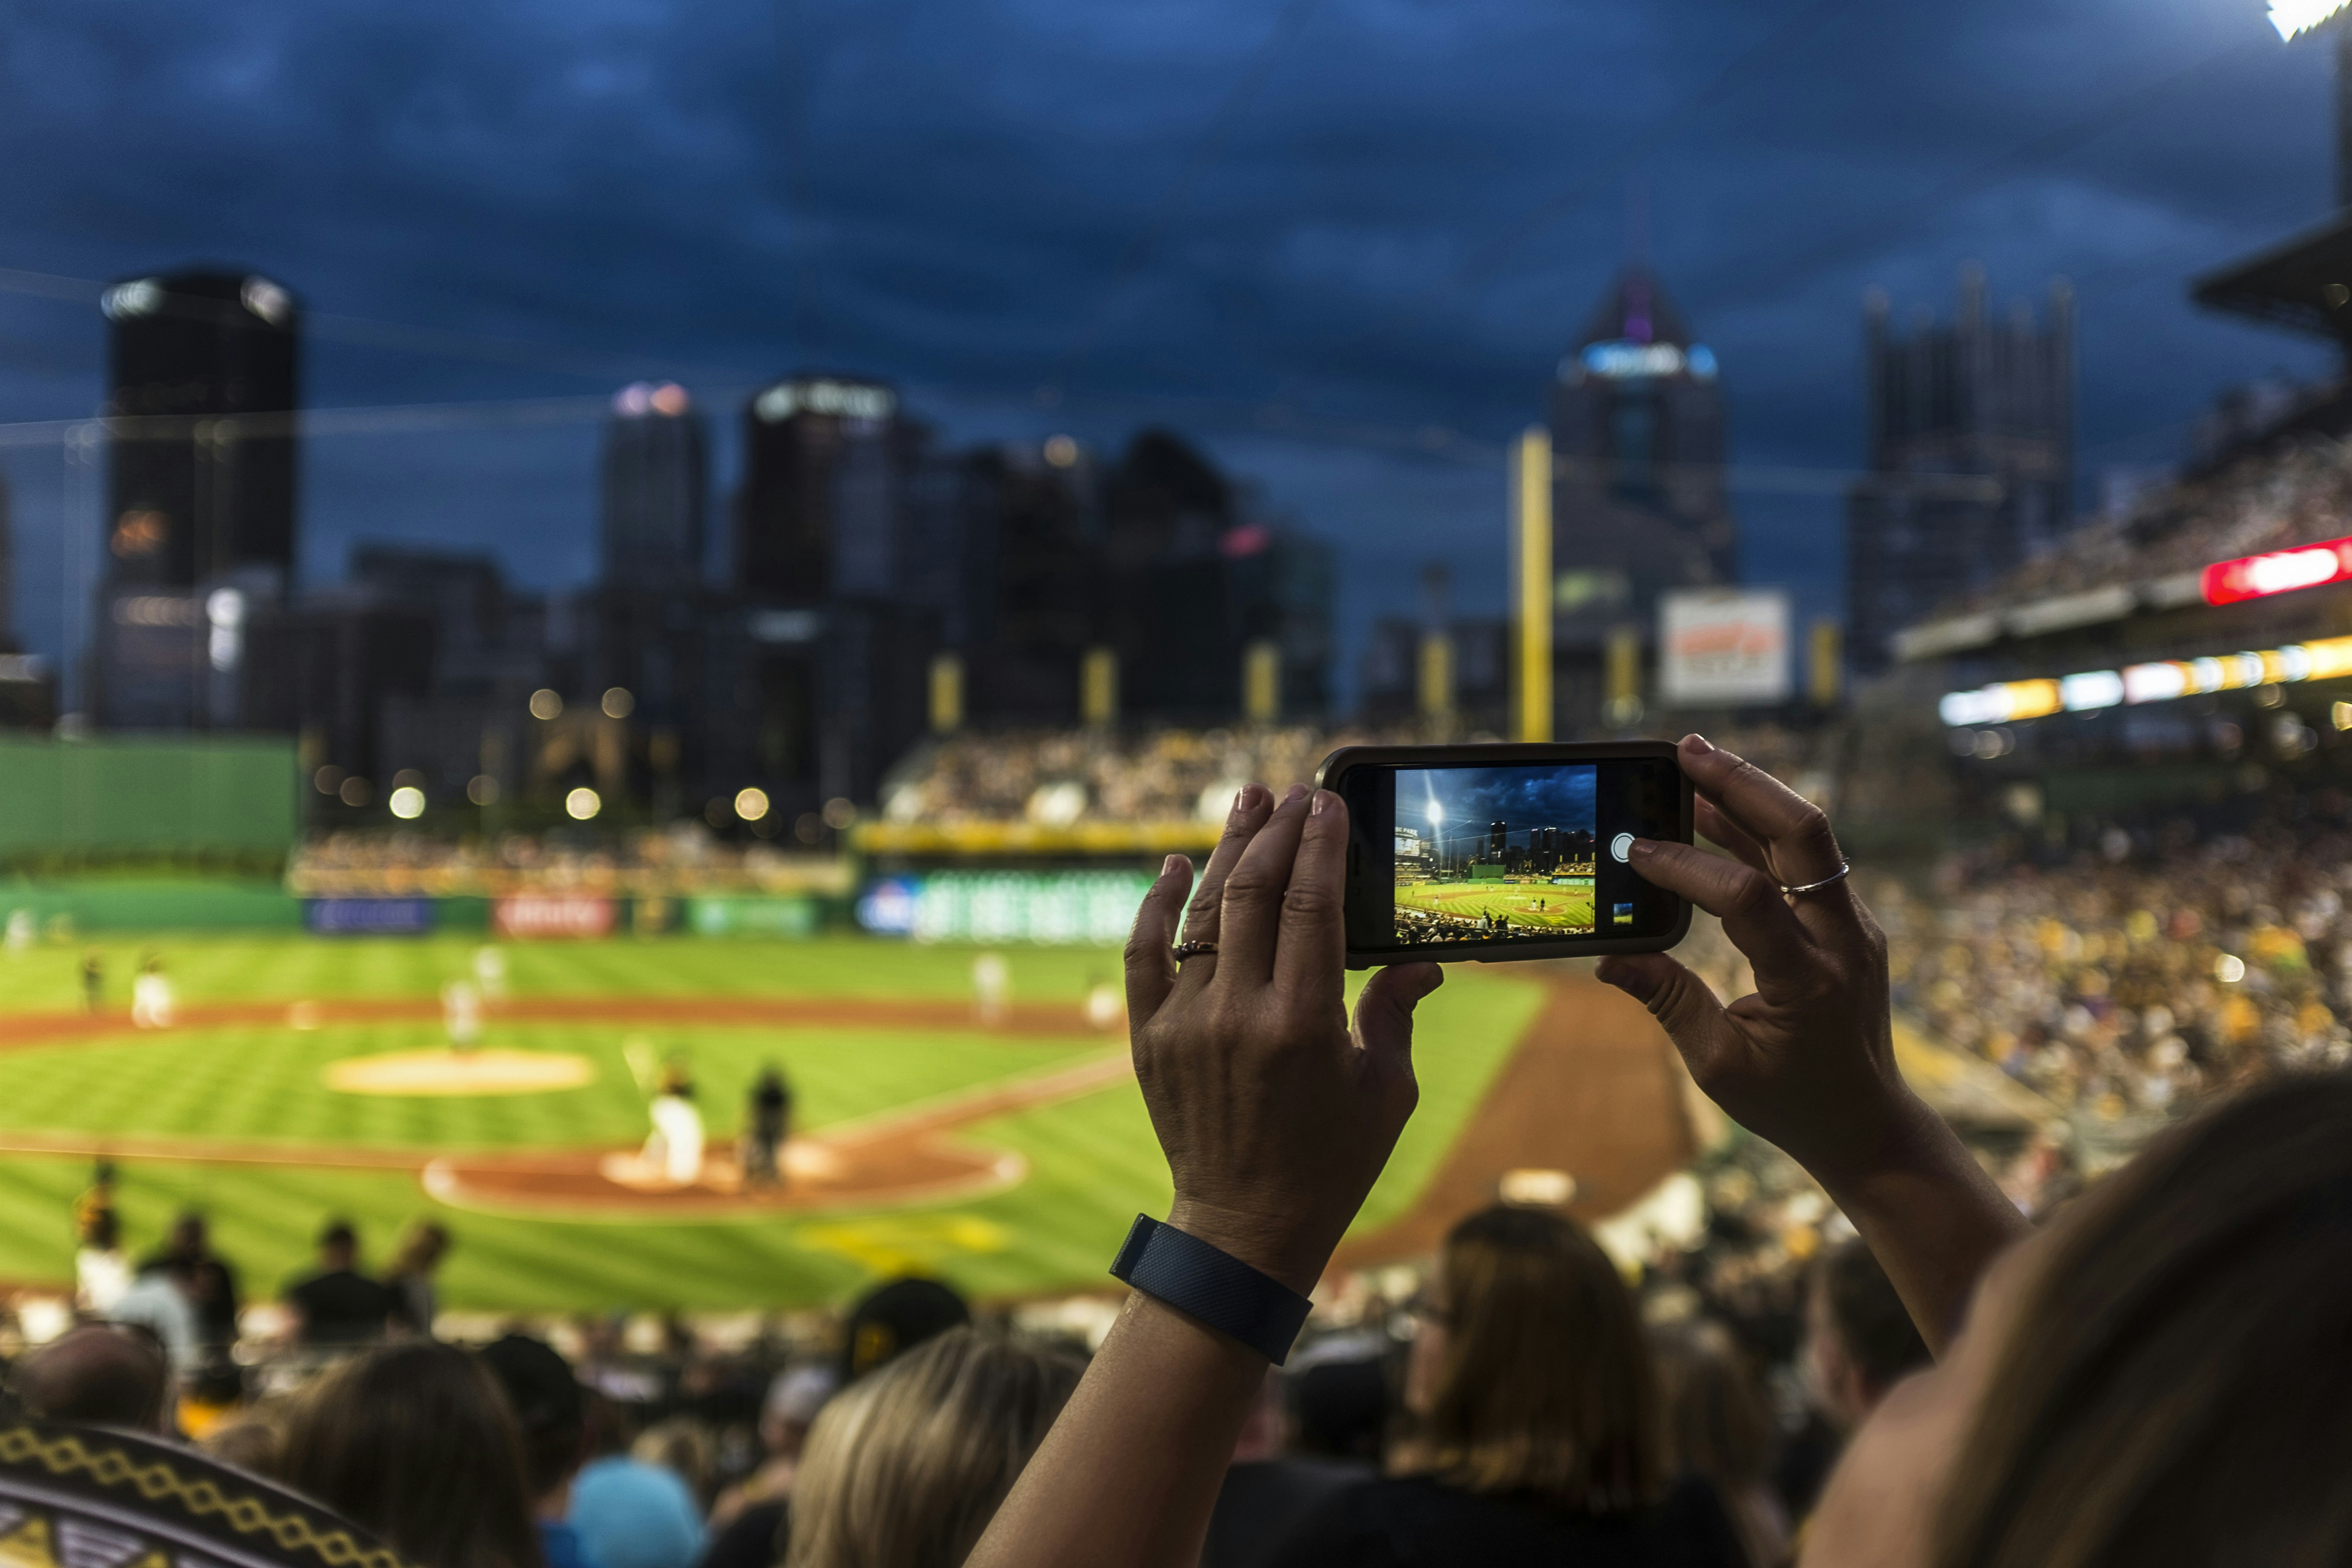 Inne på en upplyst baseballstadion på natten håller en kvinna upp en mobiltelefon och tar ett foto.  Hennes händer och telefonen är i skarpt fokus, medan resten av scenen är suddig.